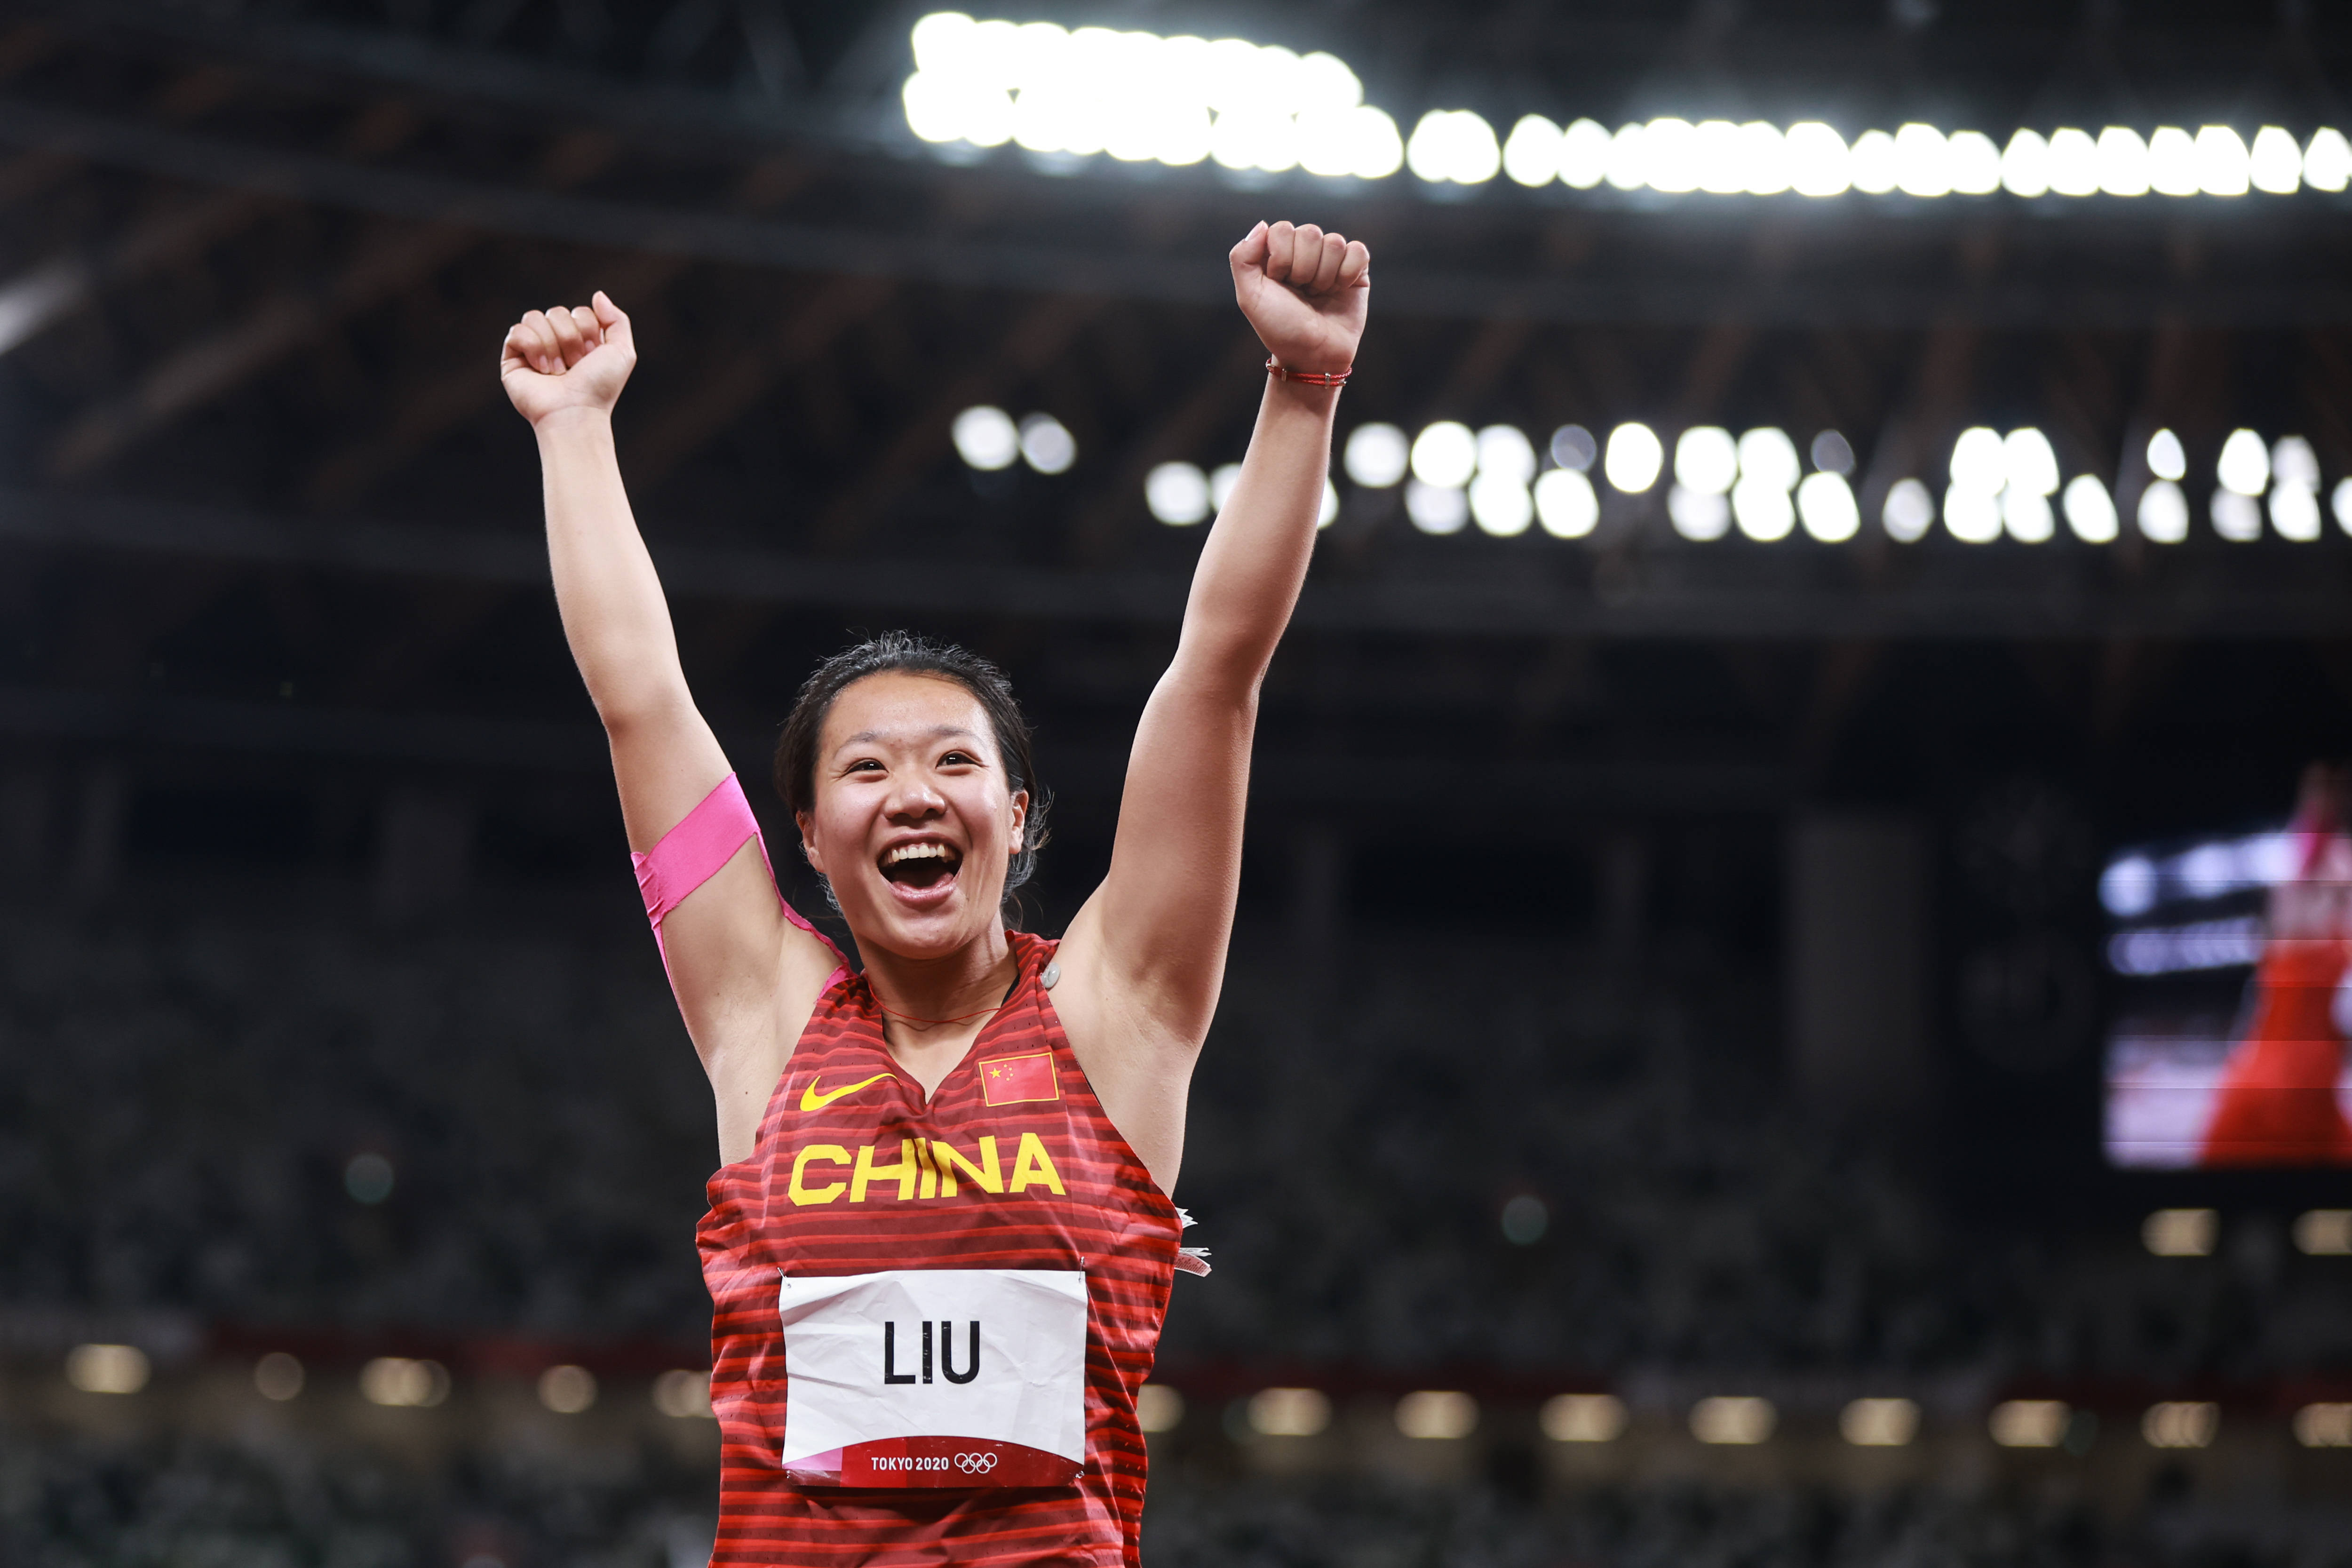 刘诗颖在赛后笑着说:奥运会就是我的梦想,现在我的梦想完成了